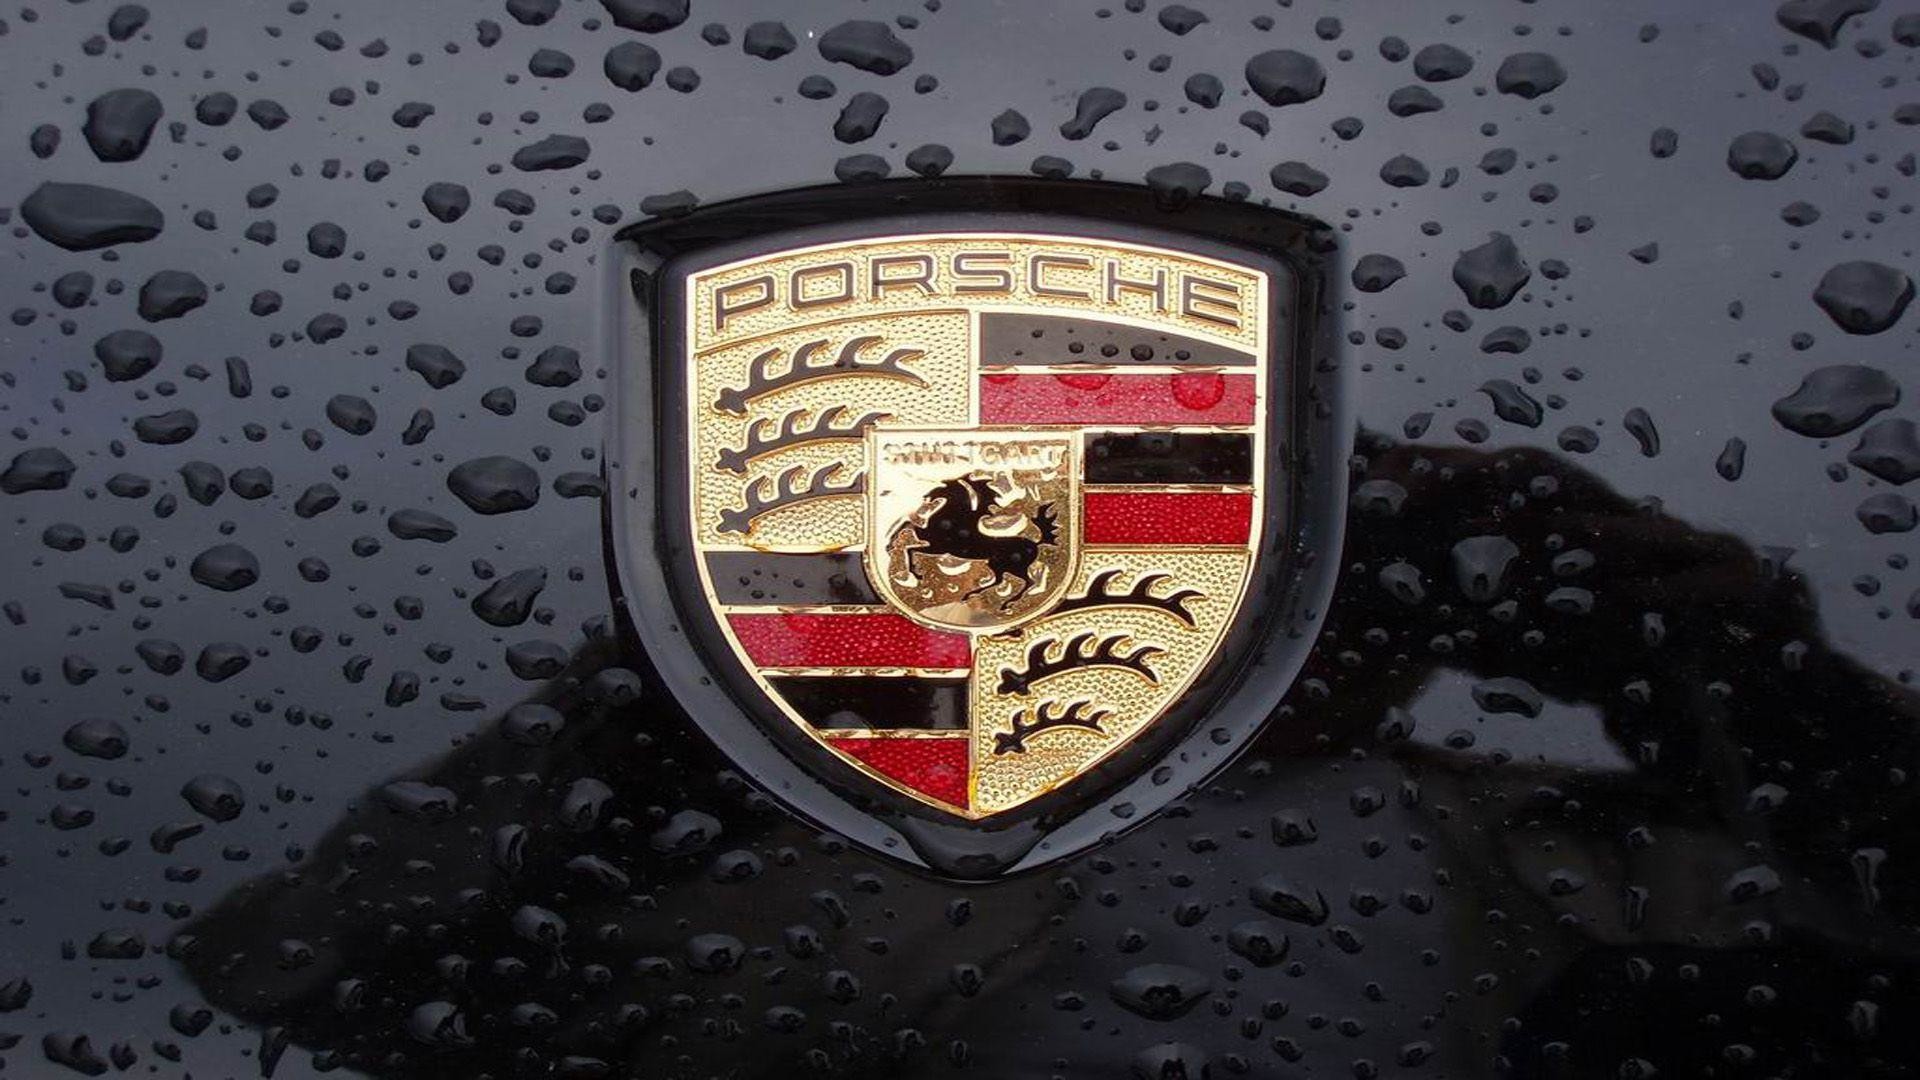 1920x1080 Porsche Logo Wallpaper High Quality ~ Sdeerwallpaper